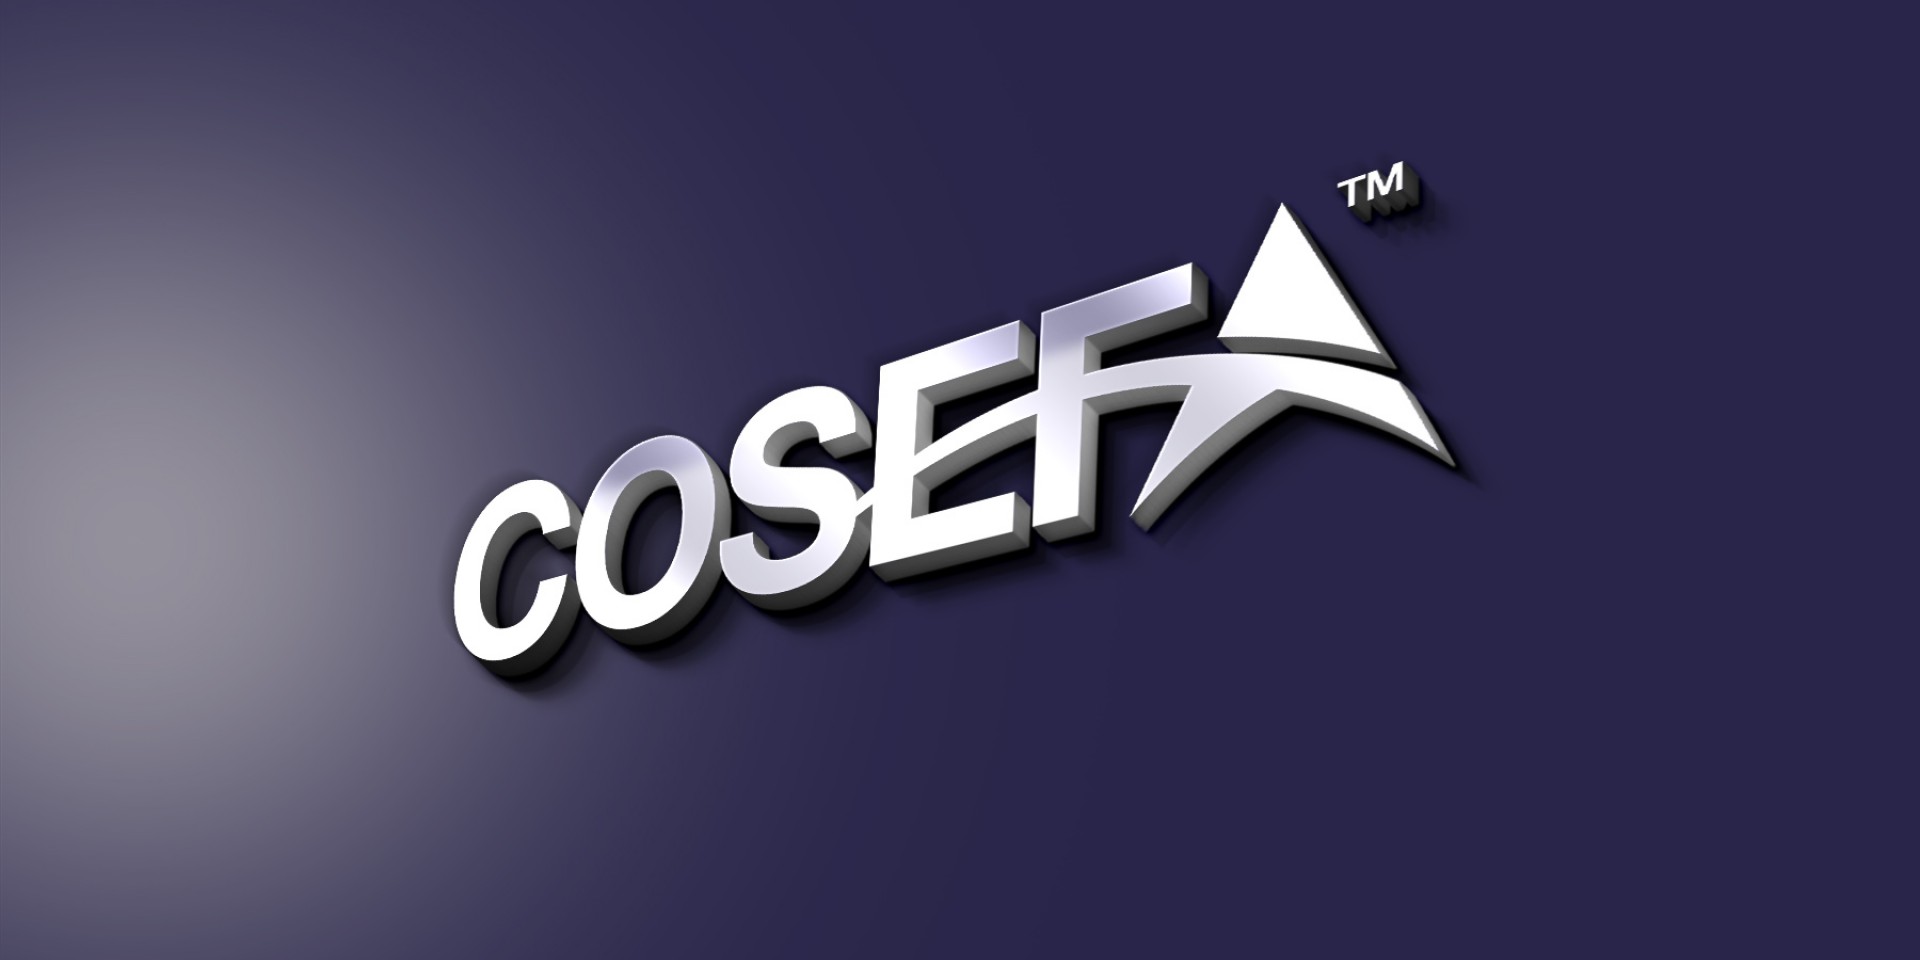 COSEFA logo and stationary design